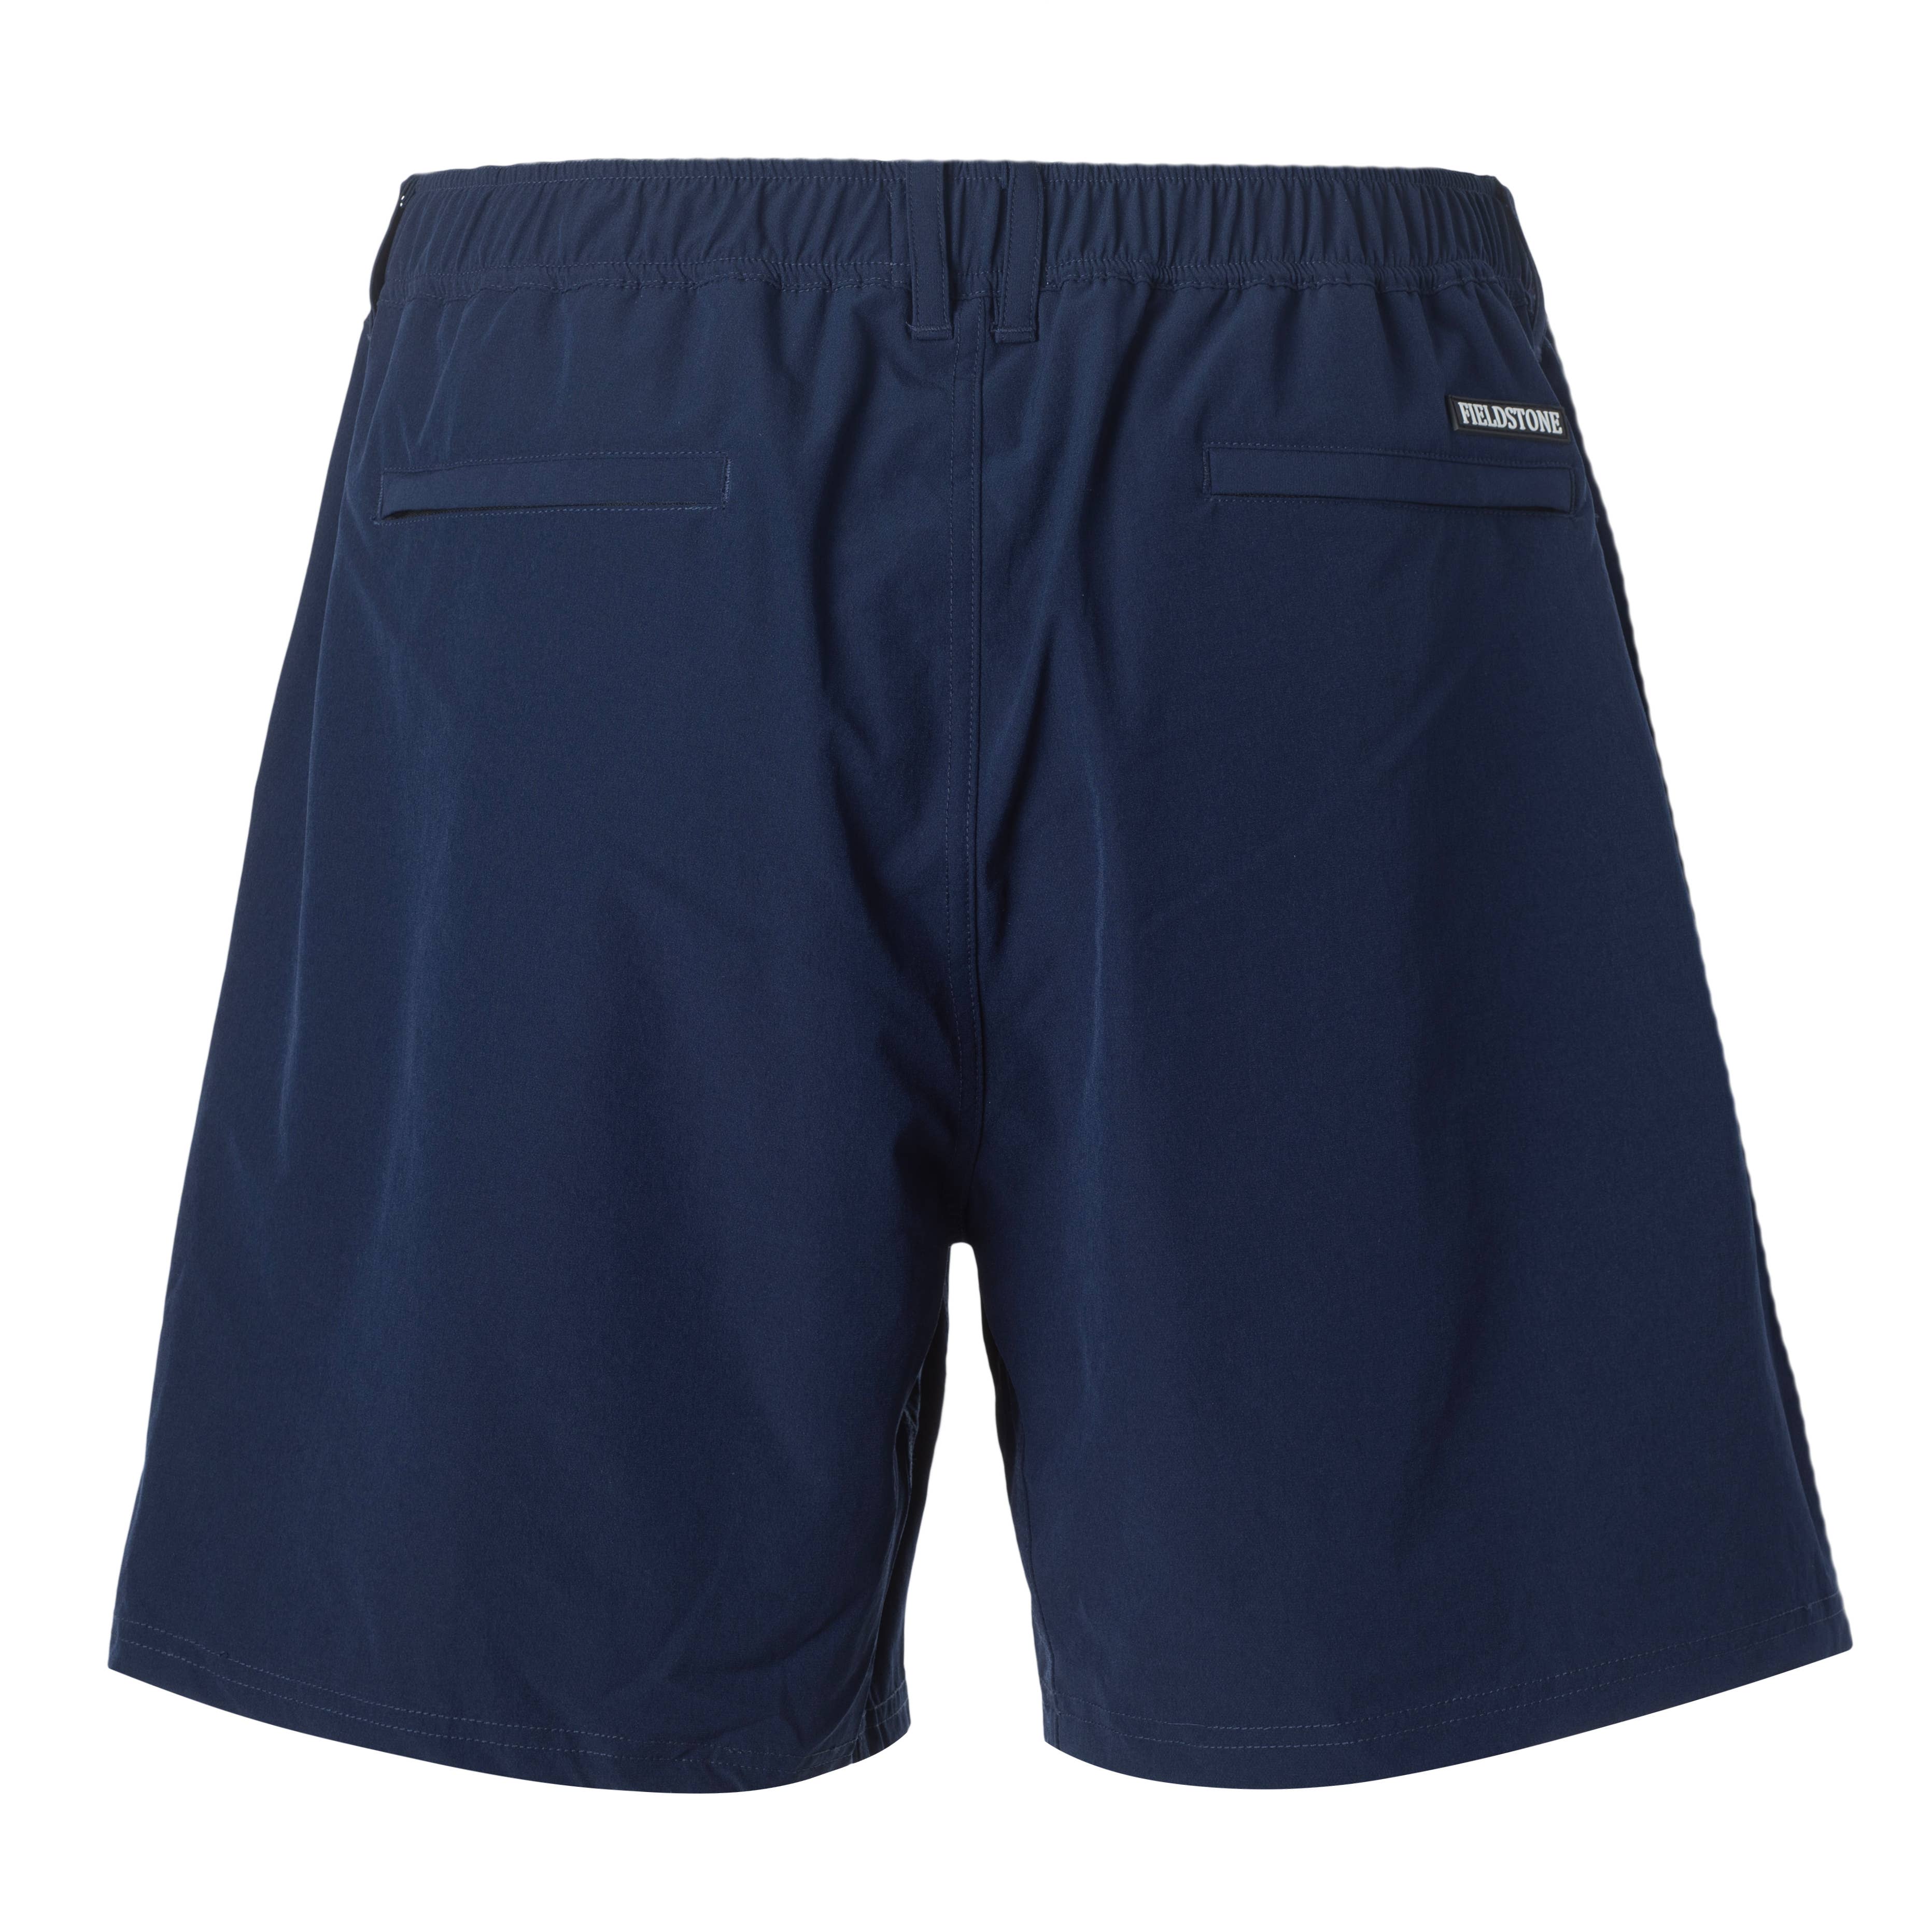 Fieldstone Rambler Shorts - Navy